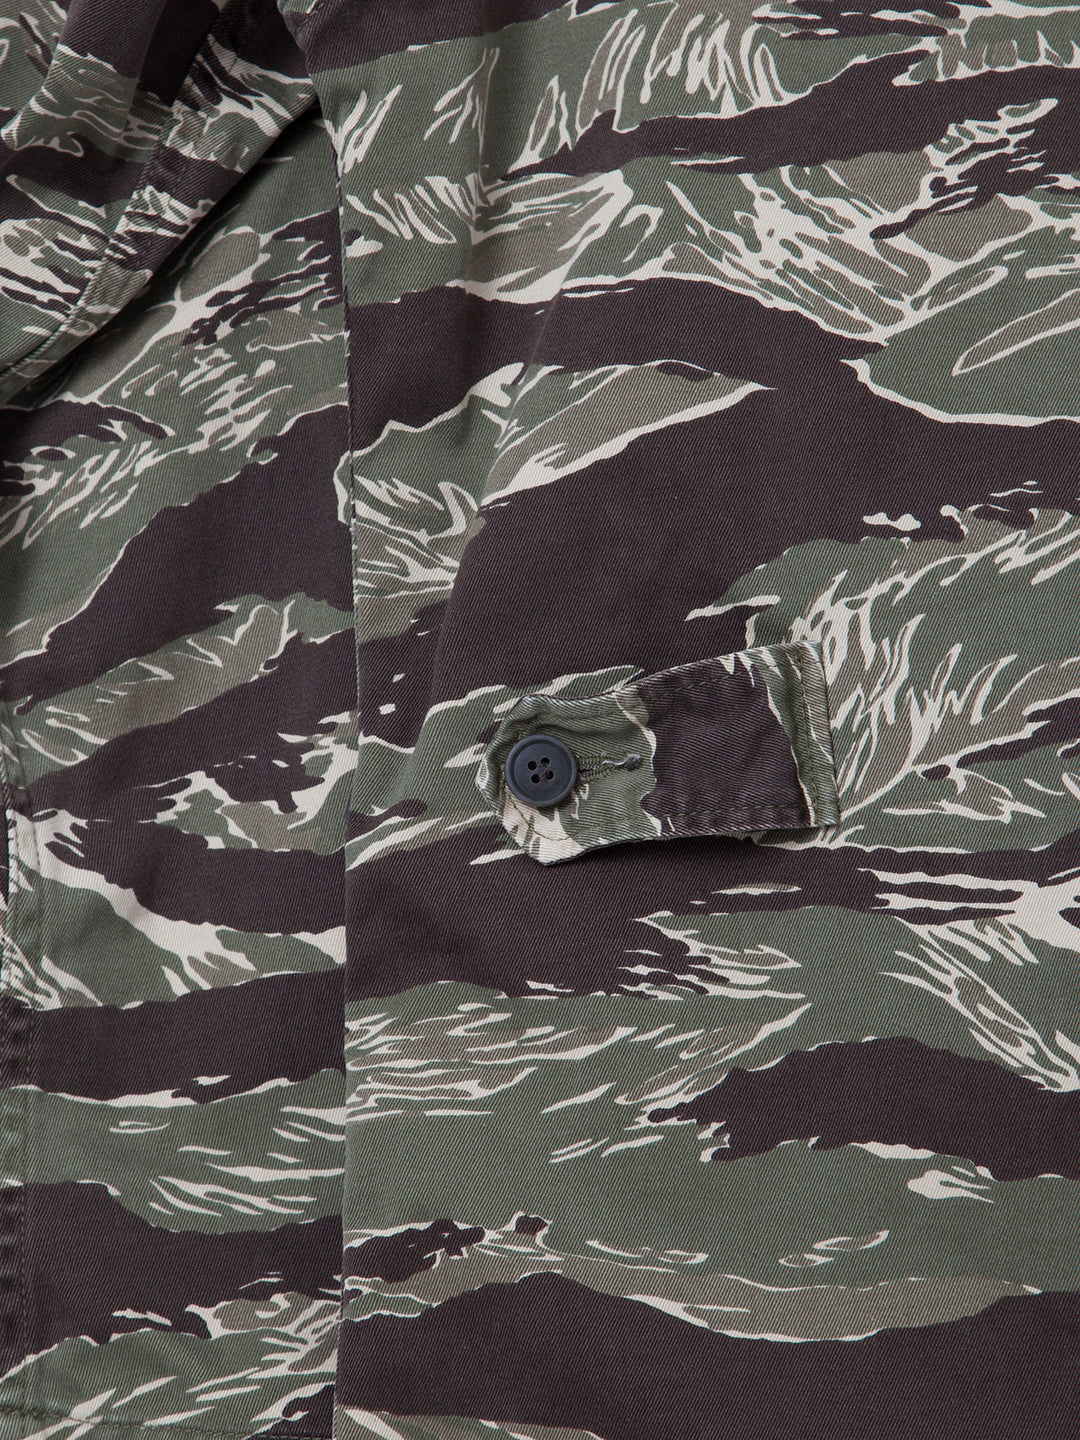 THE CORONA UTILITY - CJ025・B.D.U Jacket / Tiger Stripe・Combat Fatigue Pattern Twill w/Special Bio Wash